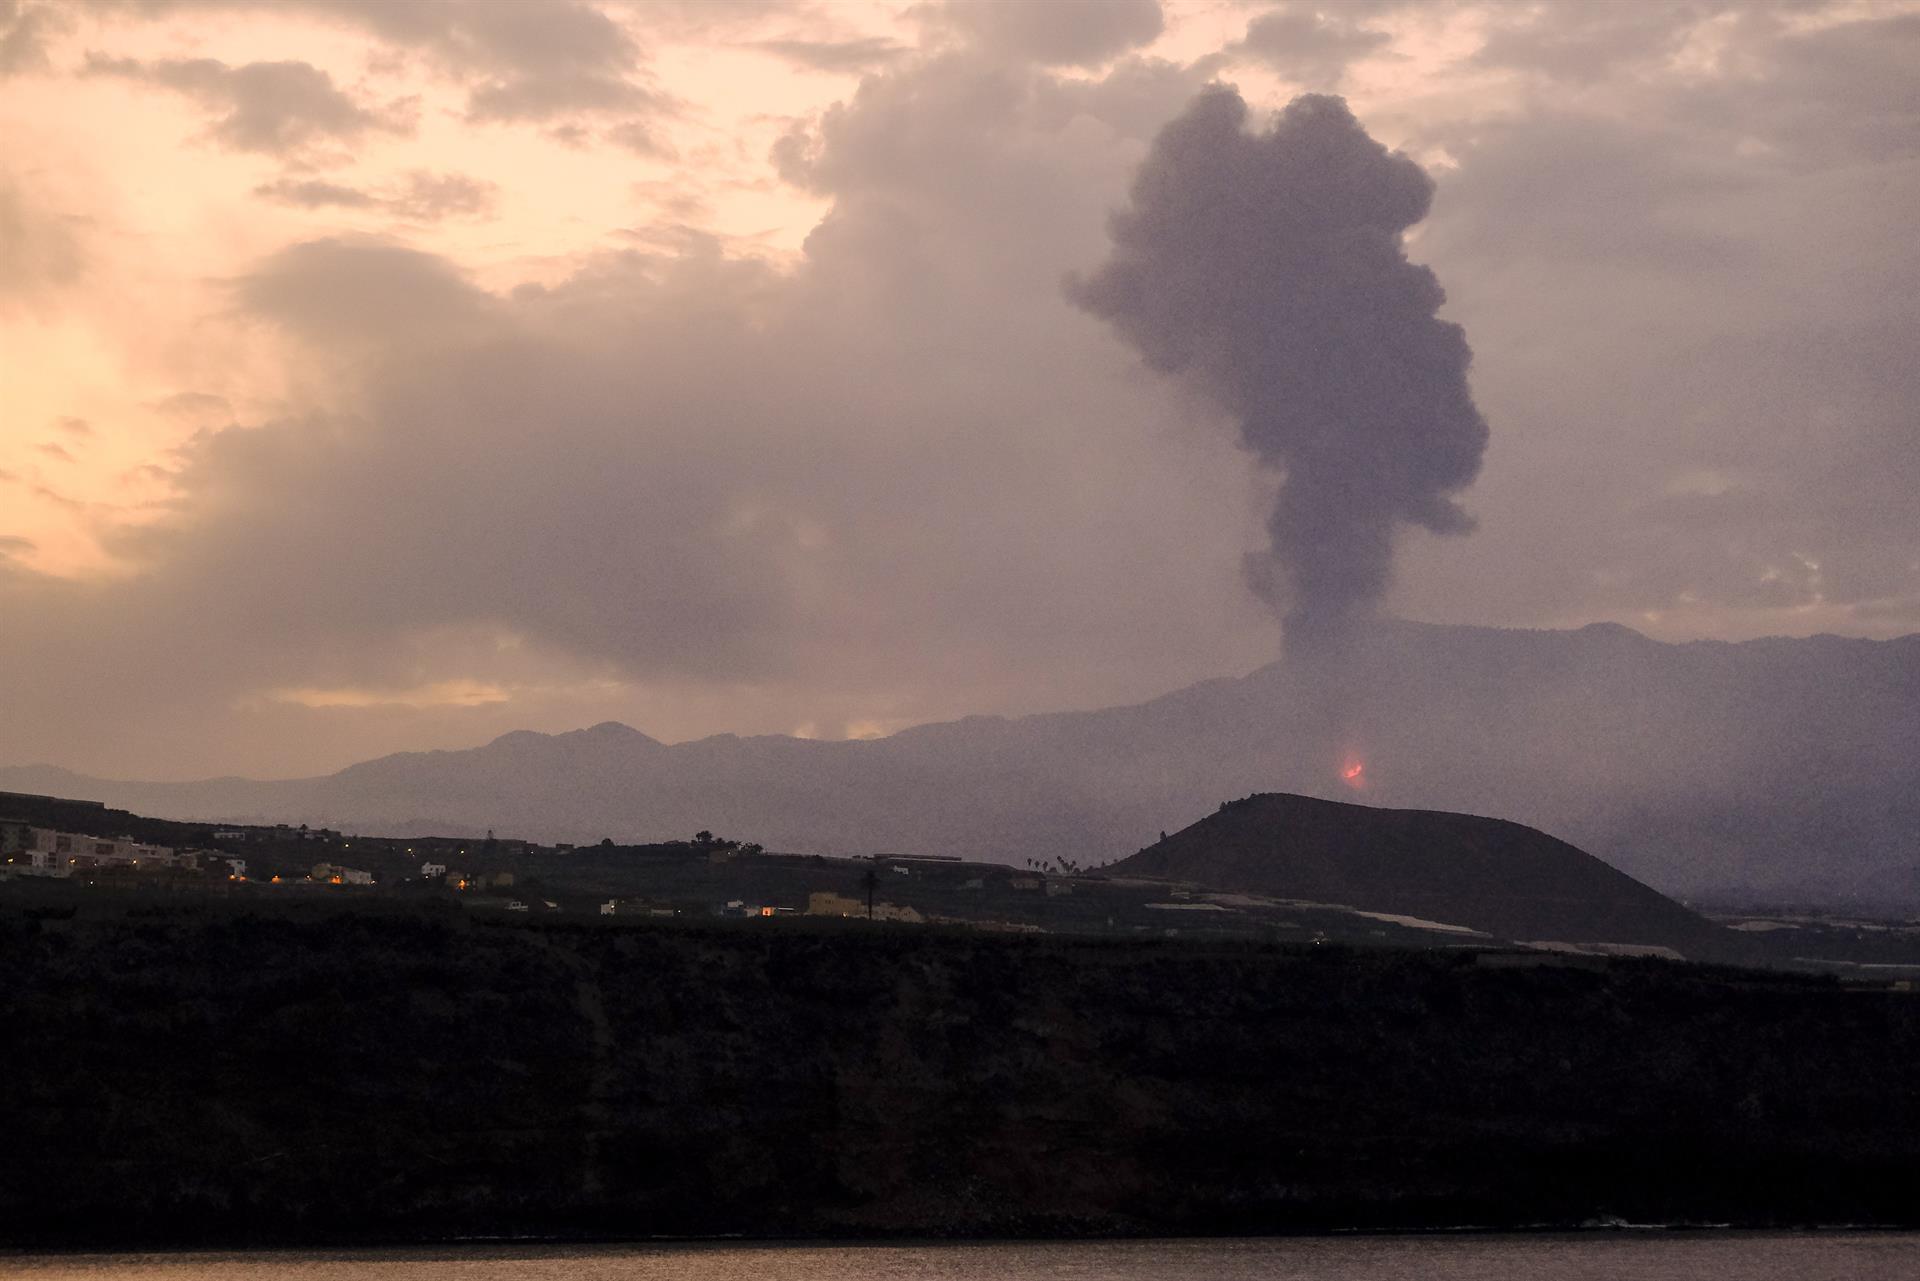 “Puede tumbar un edificio”: Vulcanólogo advierte del peligro de las lluvias con la ceniza de volcán acumulada en La Palma